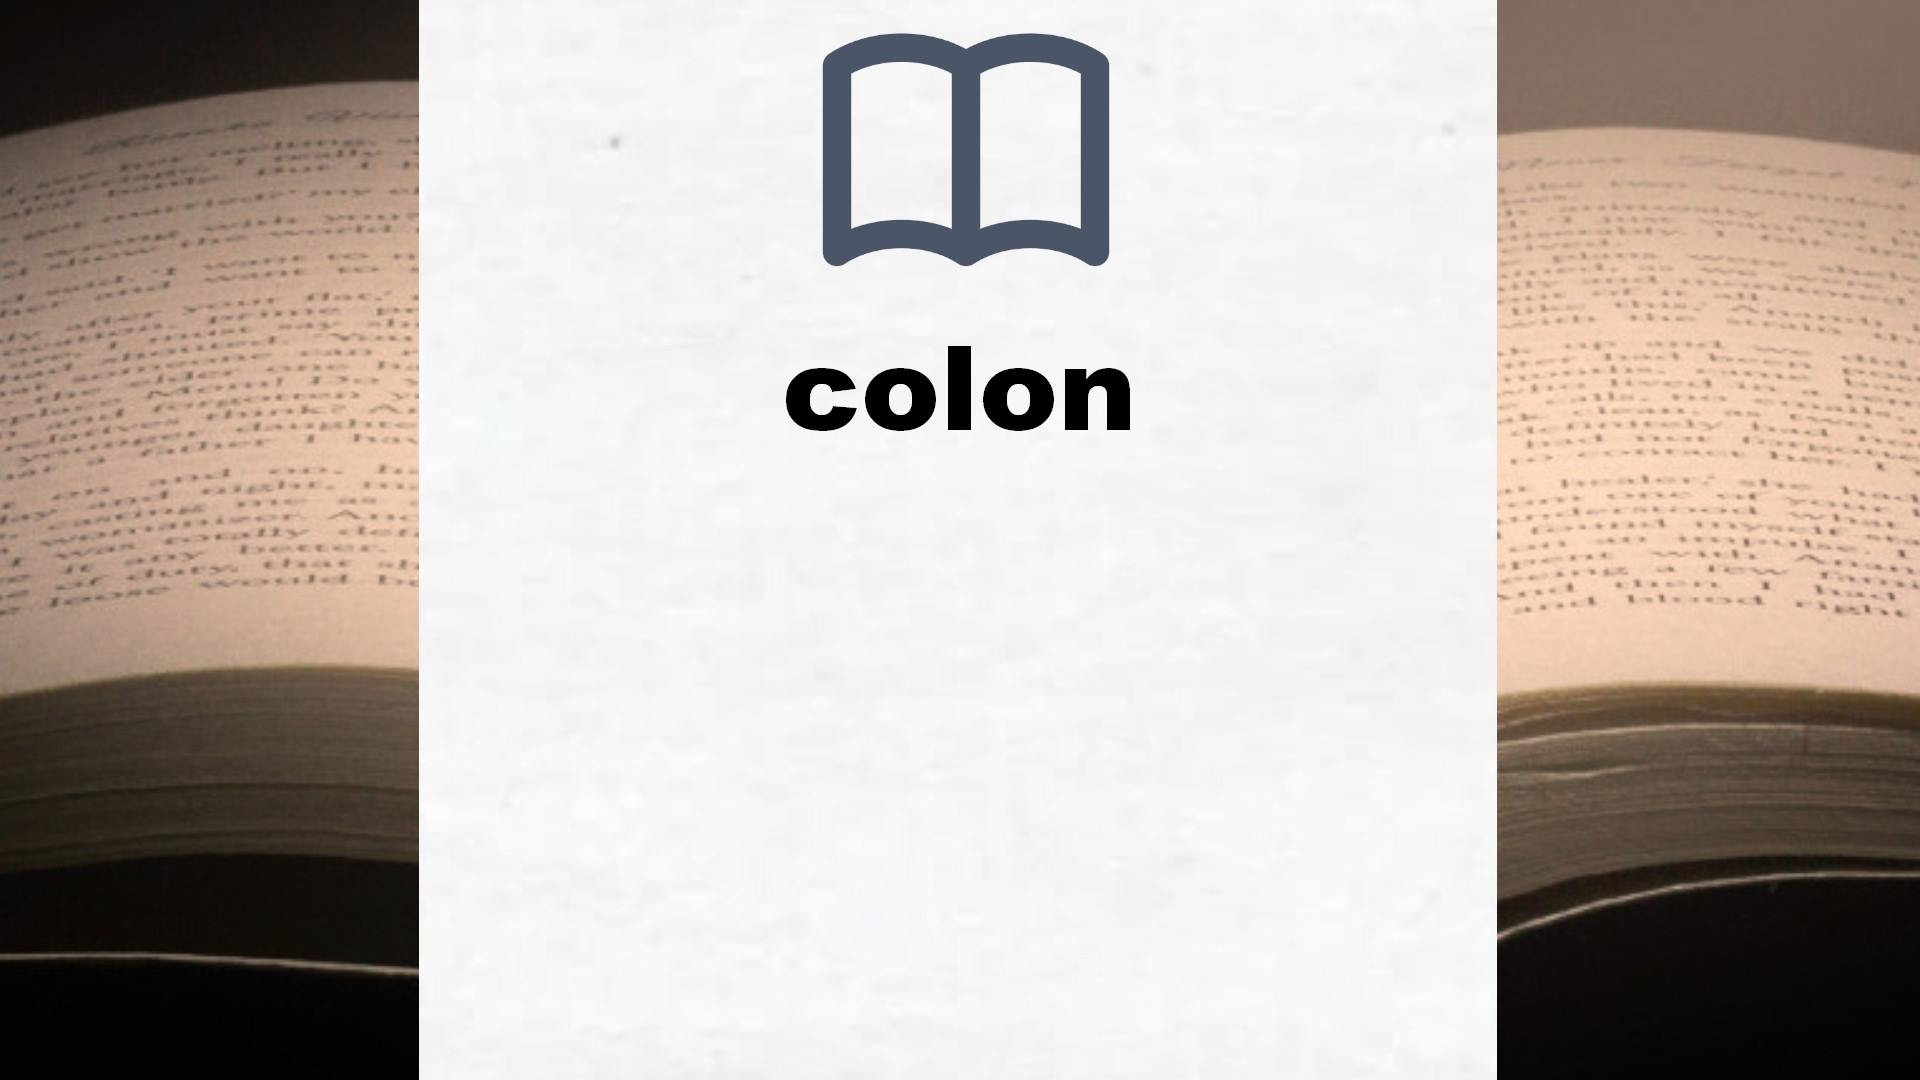 Libros sobre colon